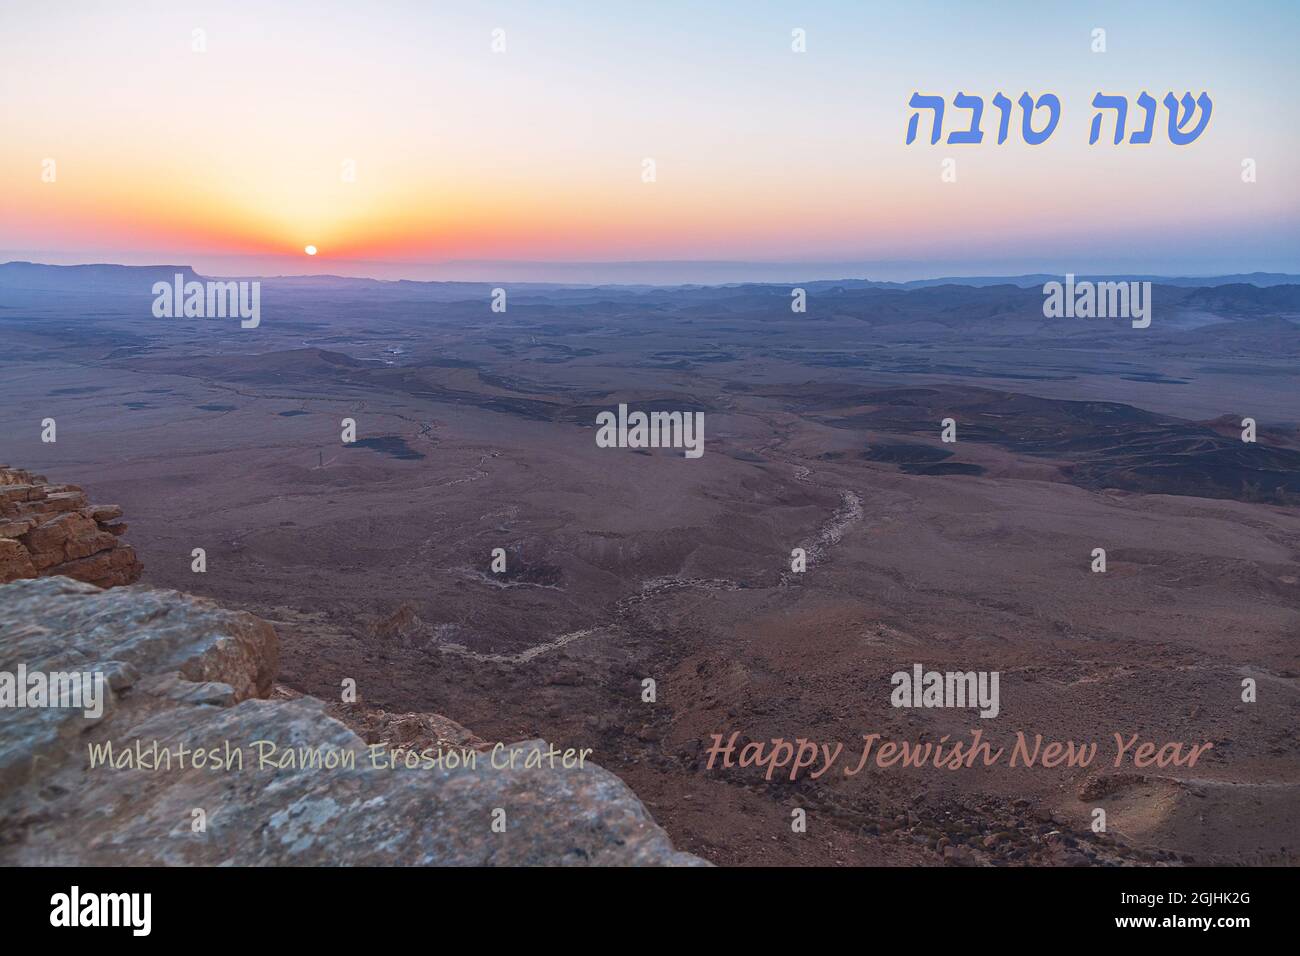 sonnenaufgang über dem Krater Makhesh Ramon in der Negev-Wüste in Israel mit Begrüßung auf Hebräisch und Englisch für das jüdische Neujahr Rosh Hashana Stockfoto